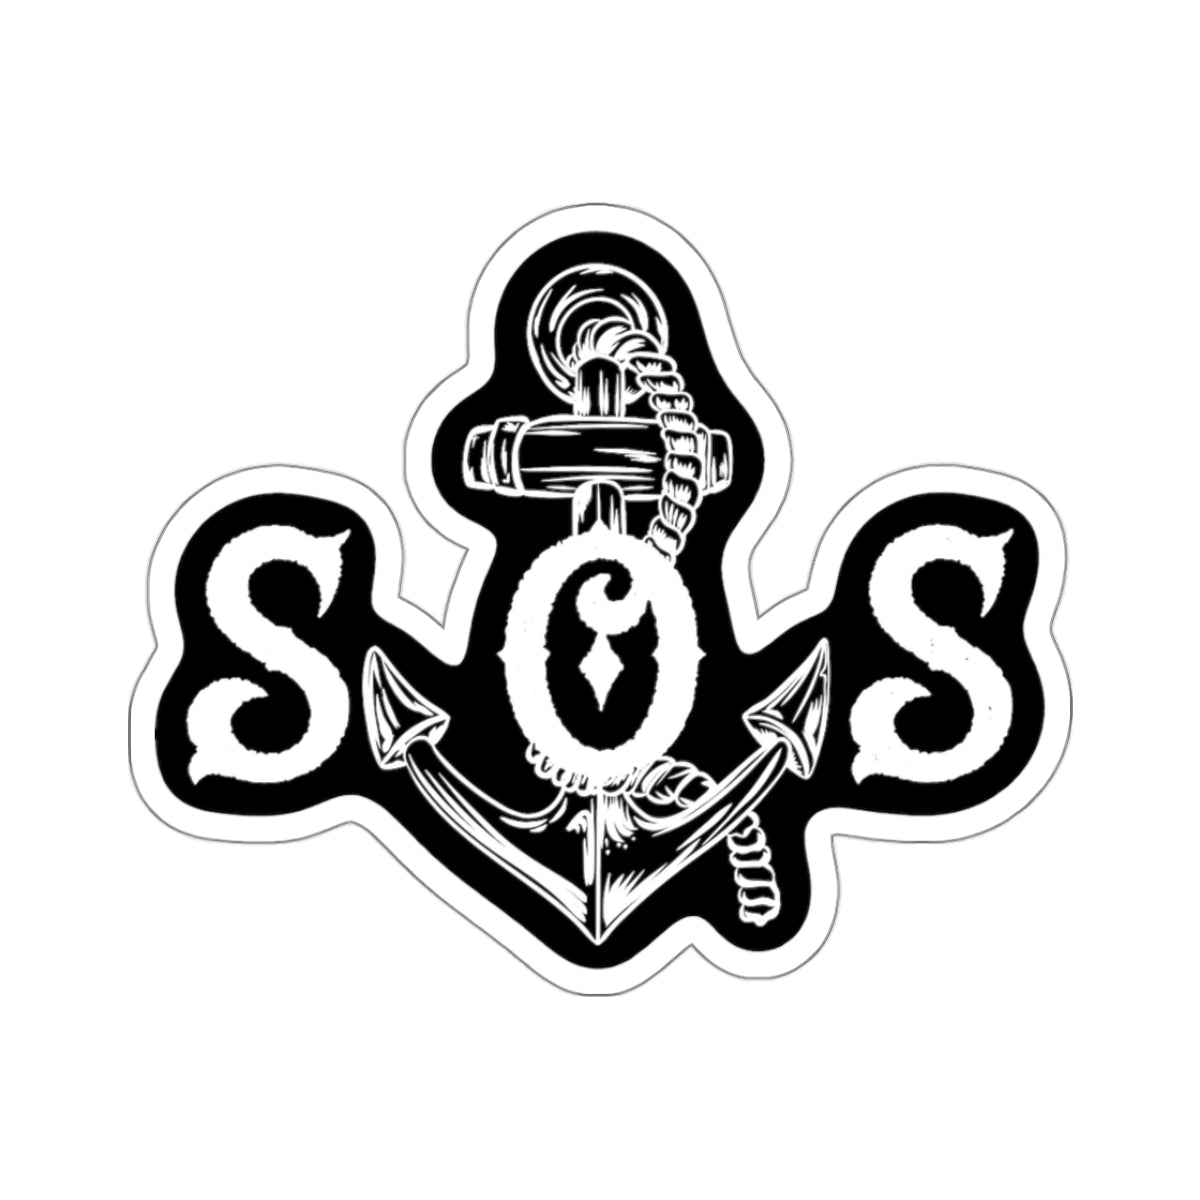 SOS OG Sticker